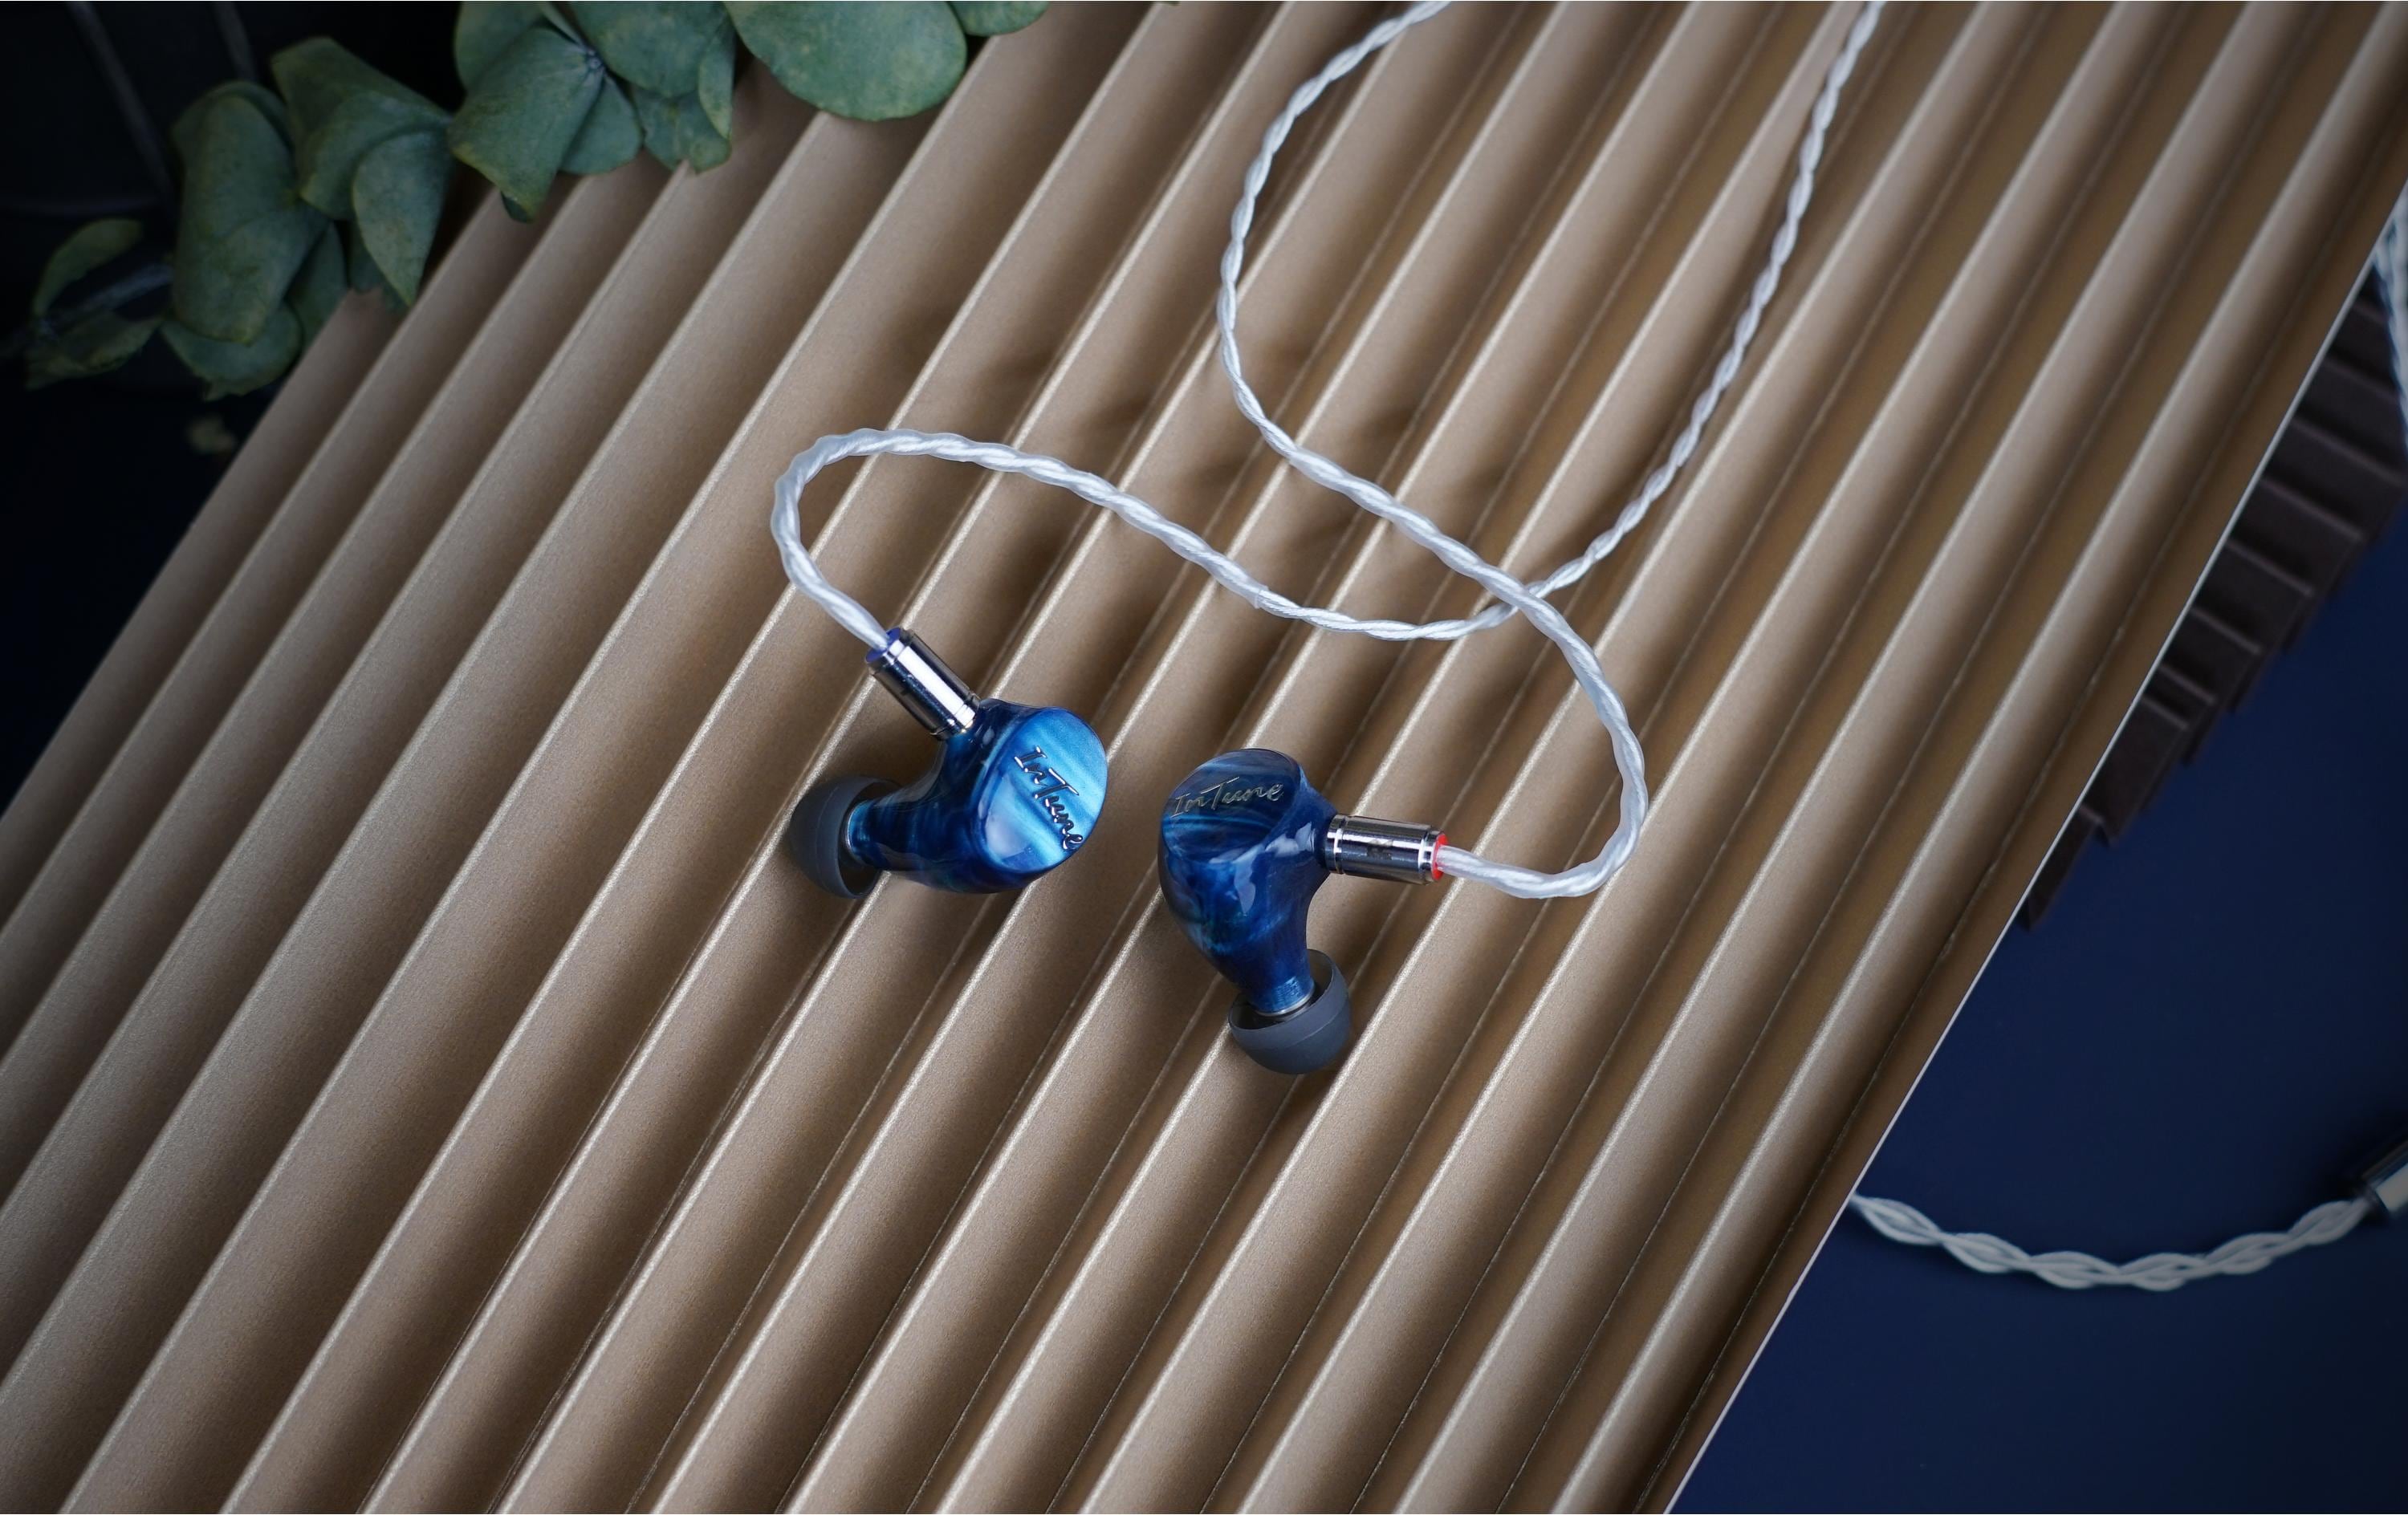 iBasso In-Ear-Kopfhörer IT07 Blau